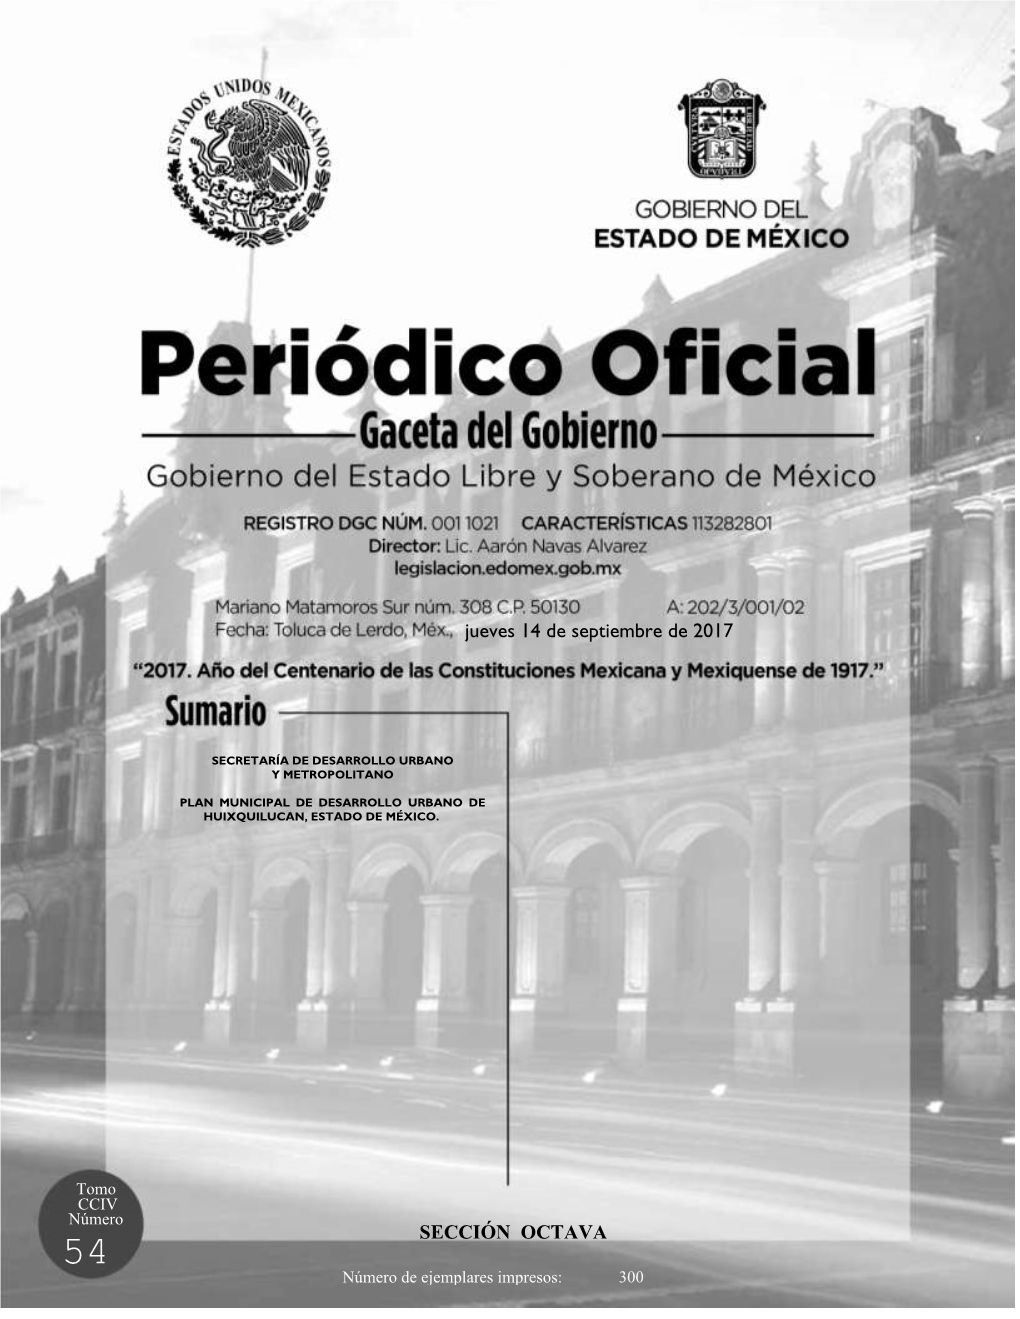 Plan Municipal De Desarrollo Urbano De Huixquilucan, Estado De México